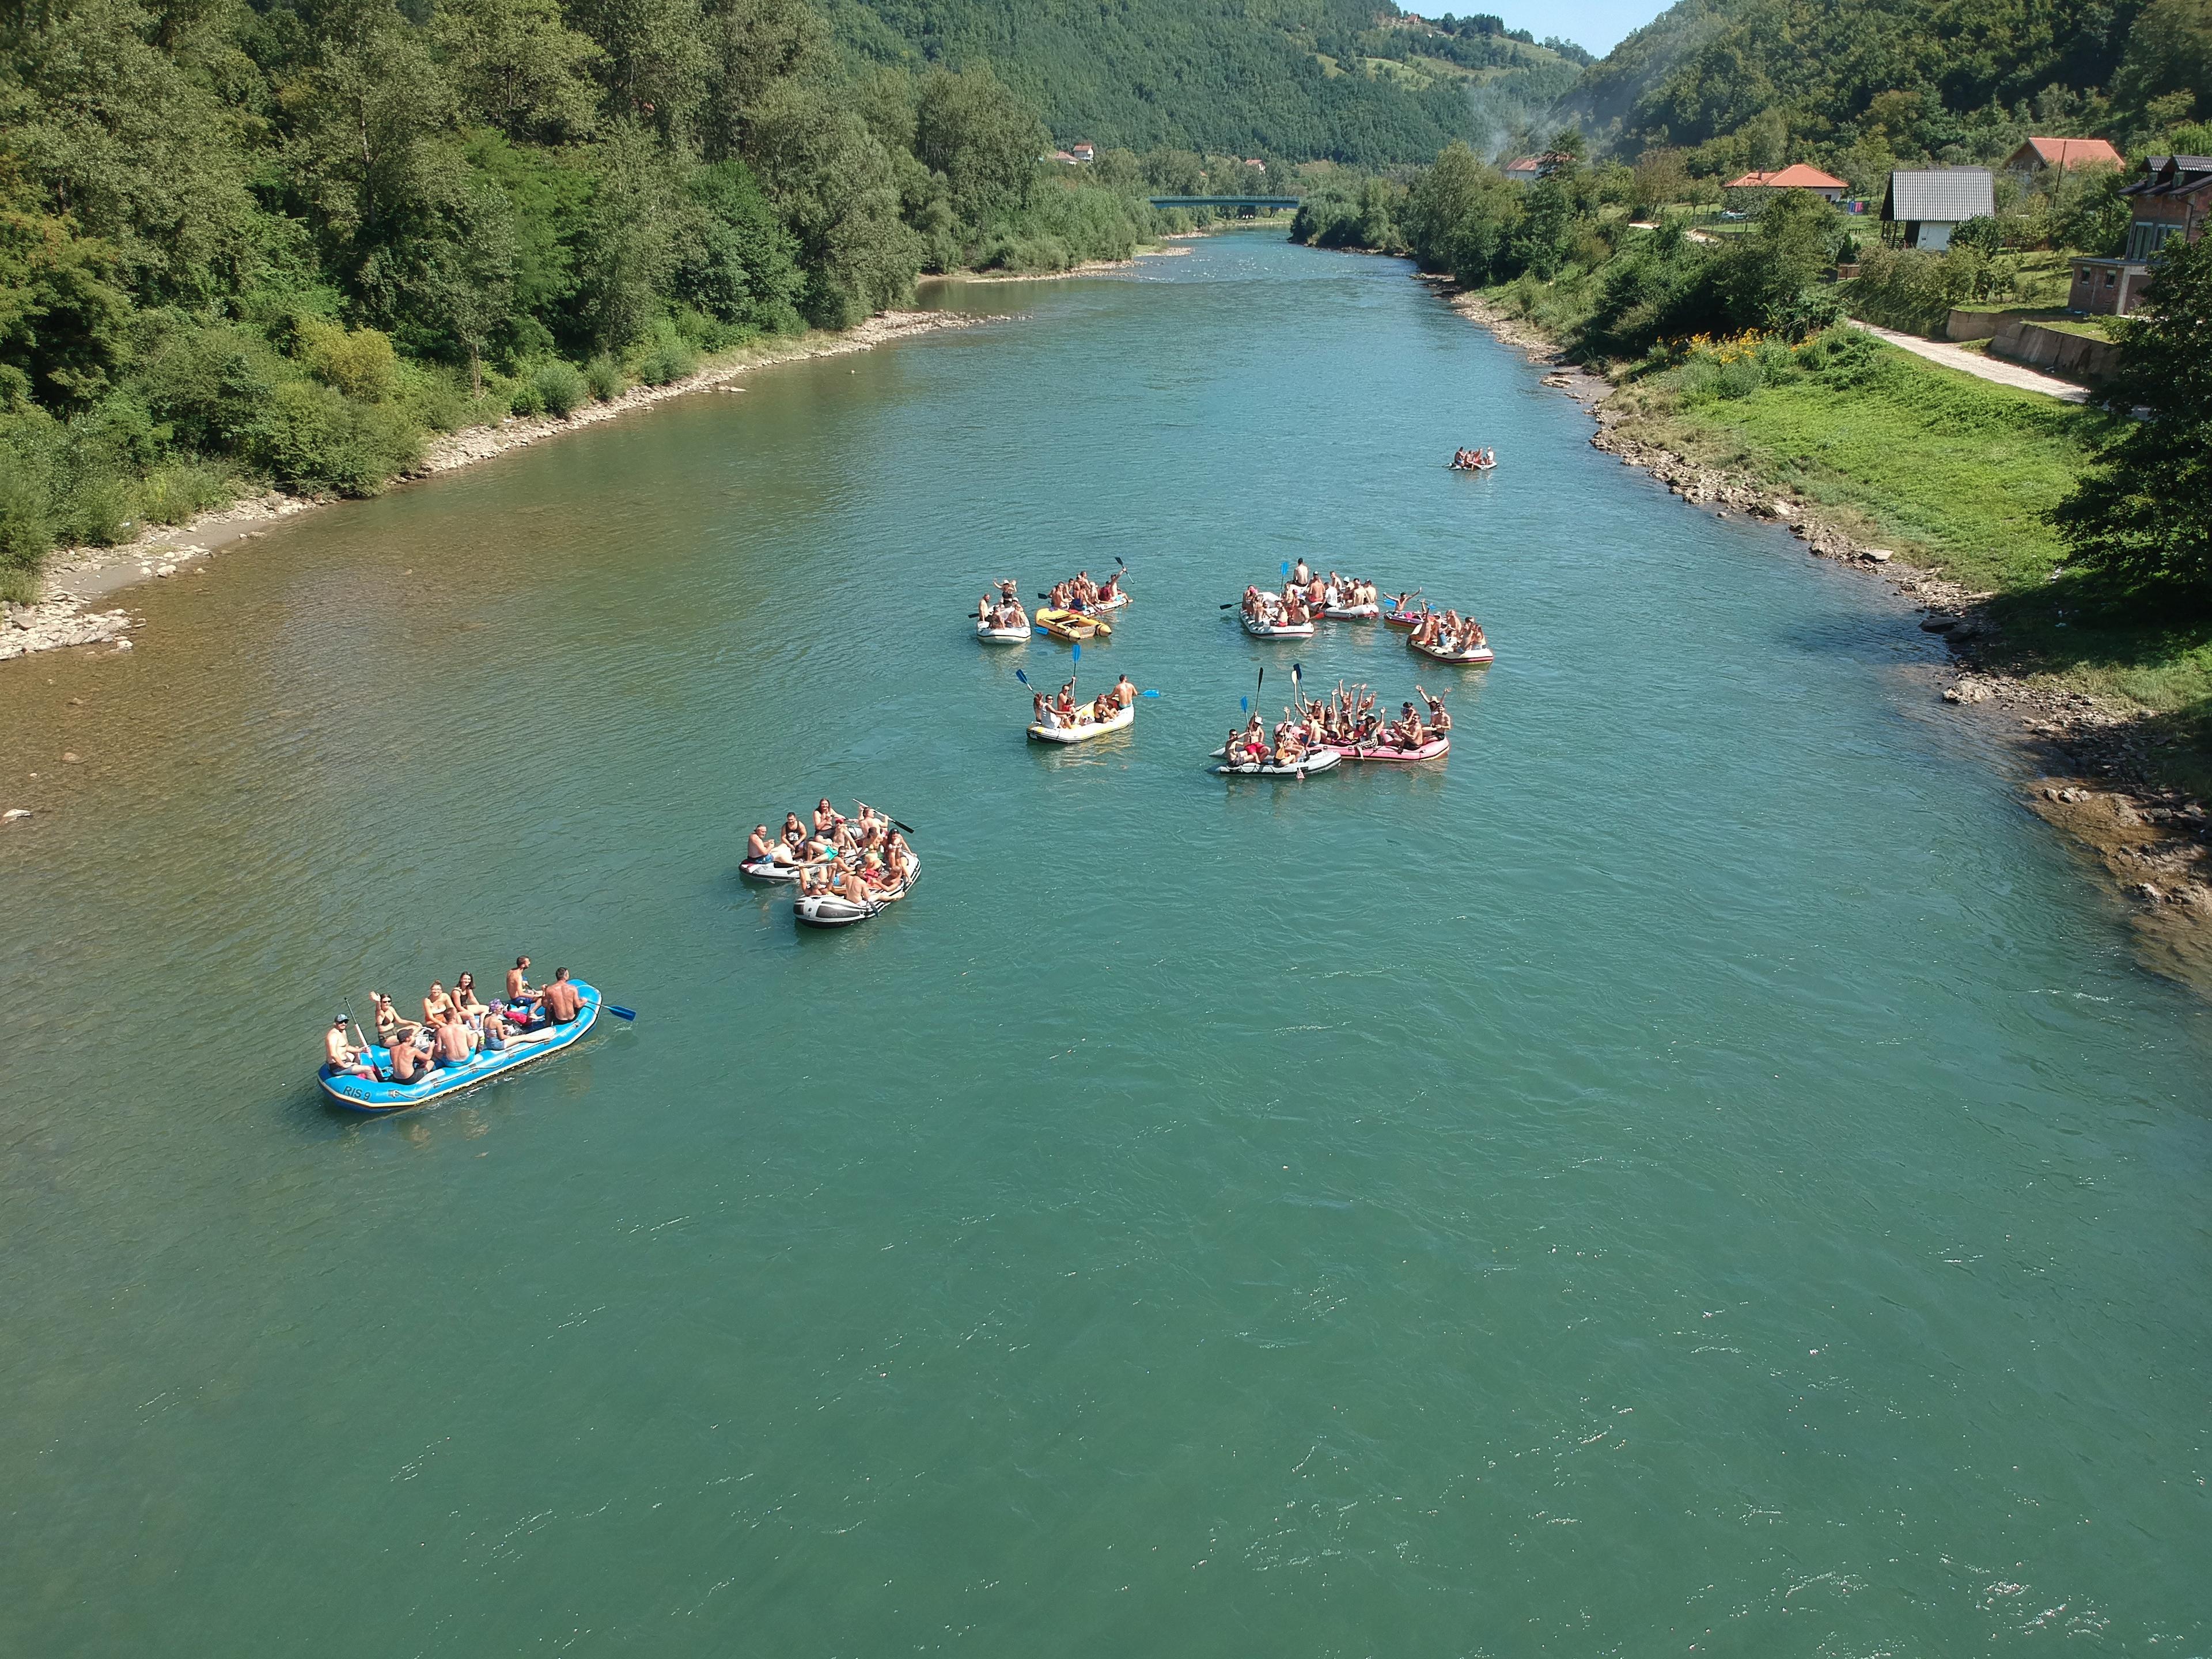 Poruka turističkim radnicima i vlasti da rijeka ne treba biti deponija